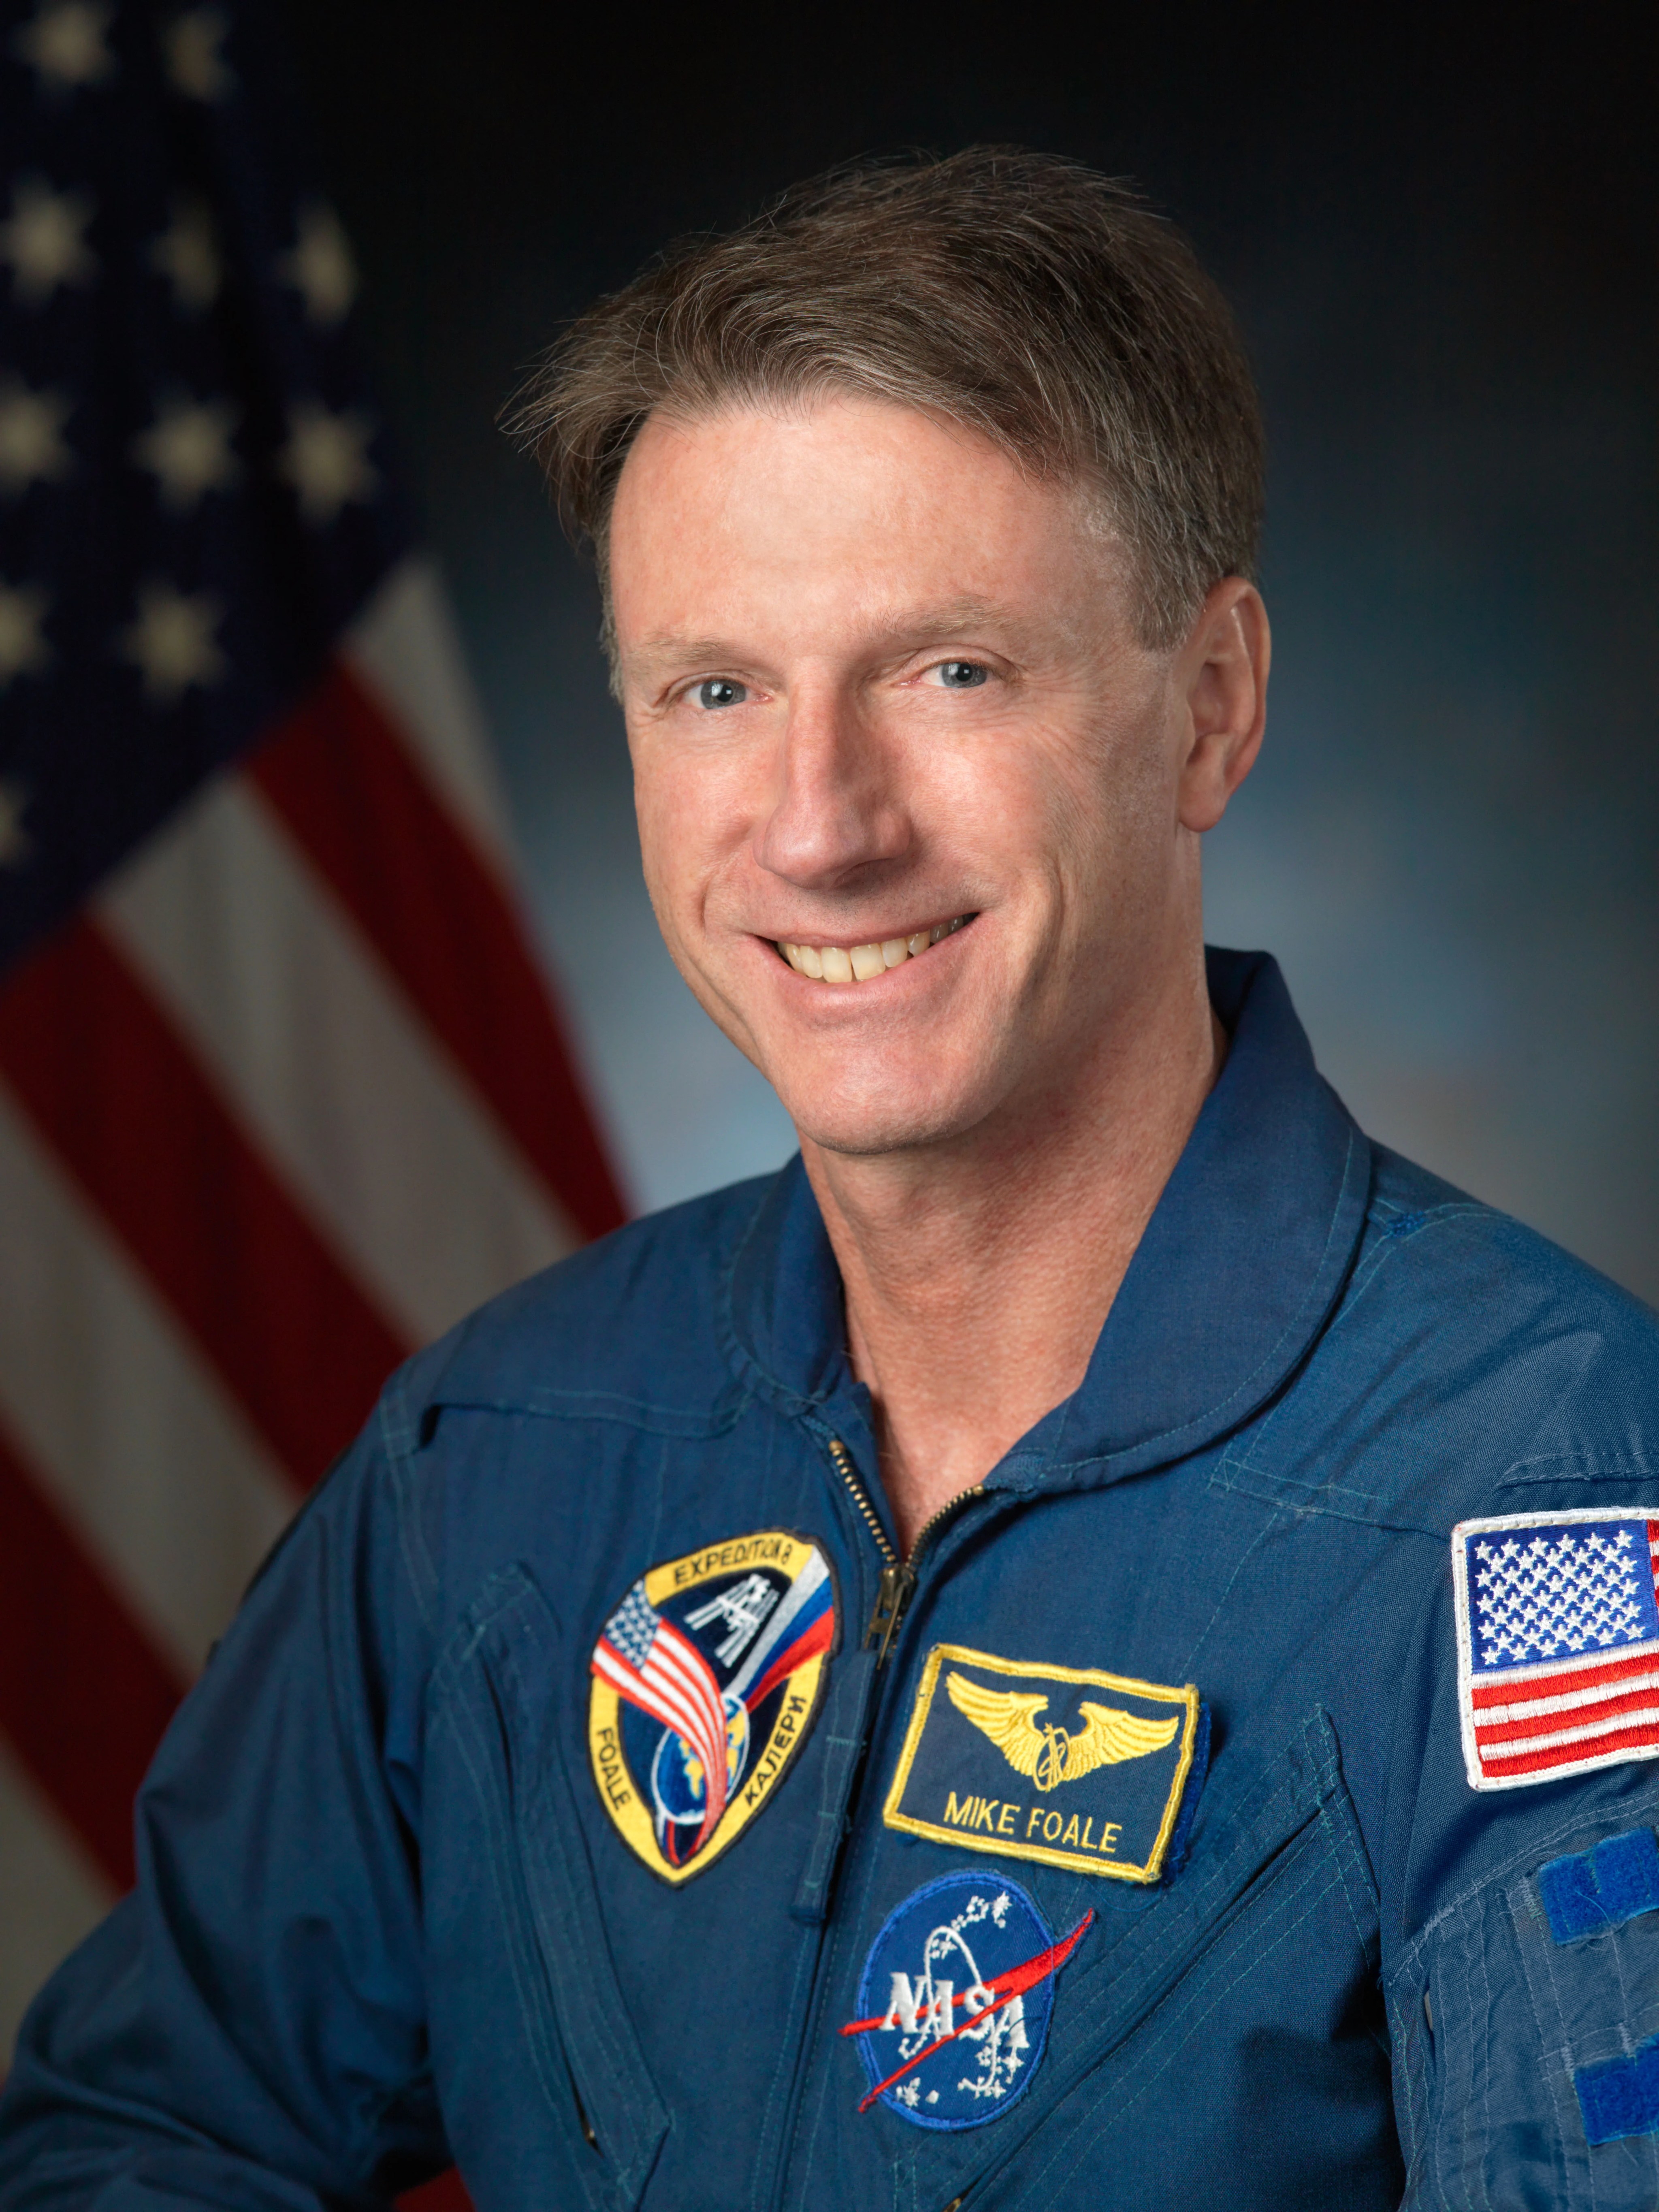 Official astronaut portrait of Michael Foale.